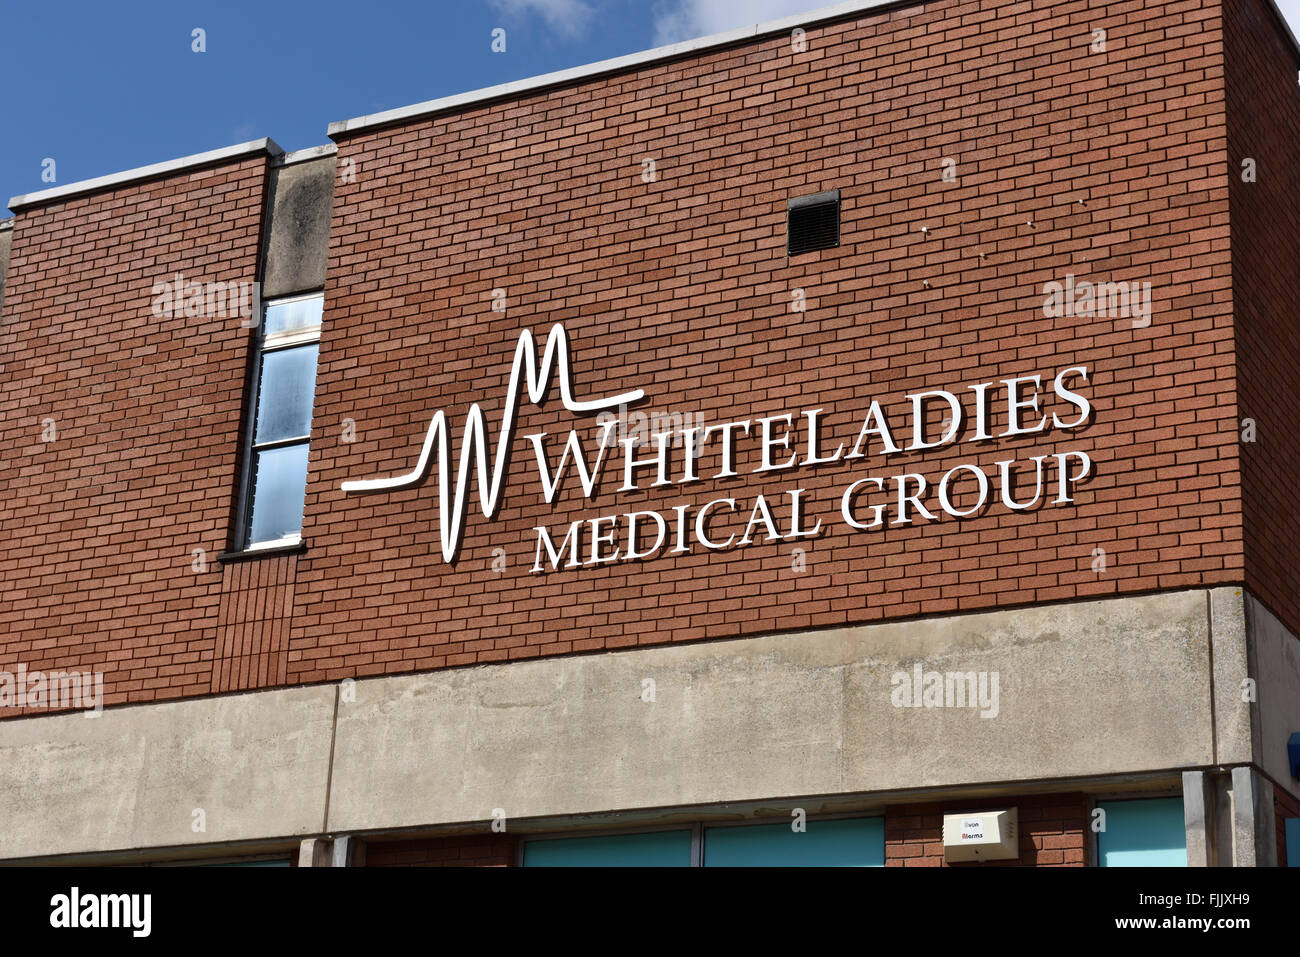 NHS Whiteladies Medical Group GP practice segno sulla costruzione anteriore, Bristol, Regno Unito Foto Stock